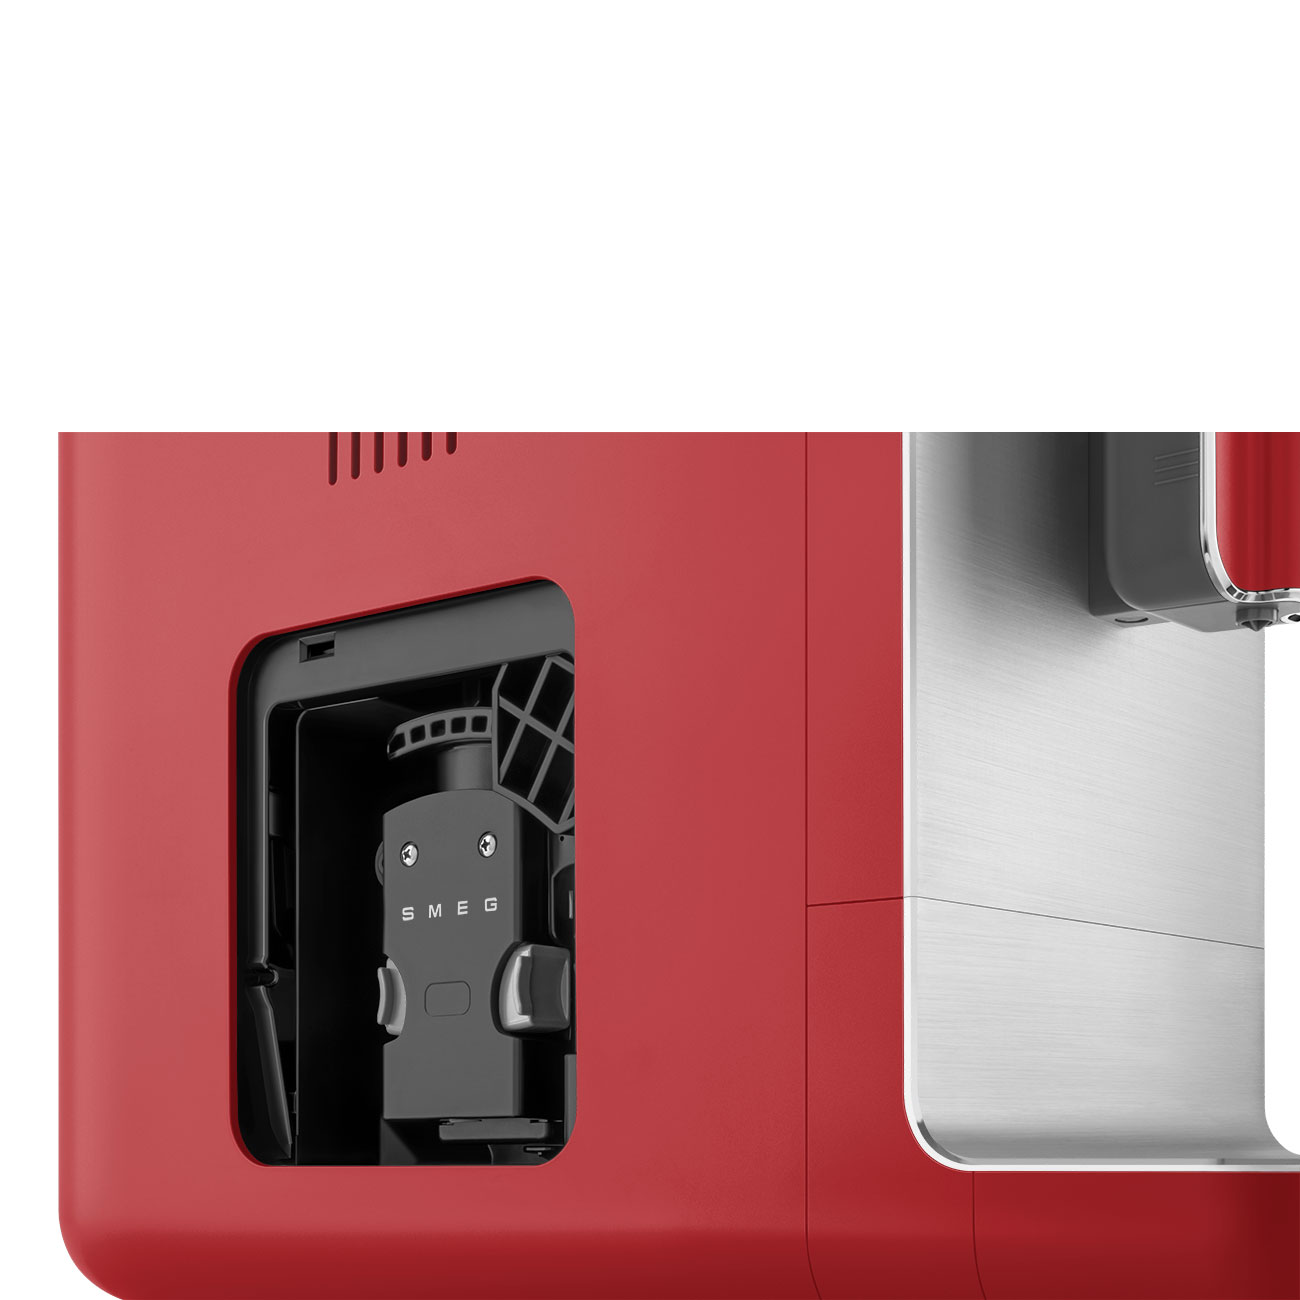 cafetera roja SMEG automática Espresso diseño calidad molinillo café